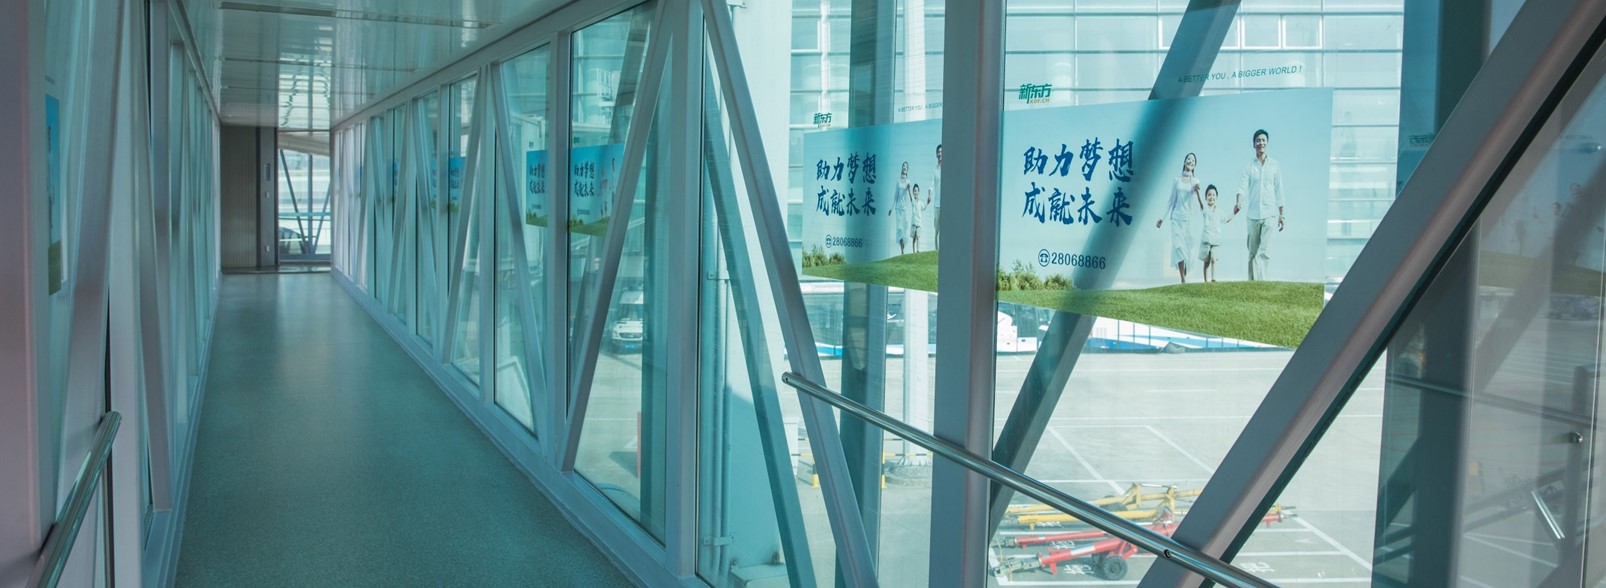 杭州萧山机场广告-客流全覆盖移动端廊桥ILQ01（内）